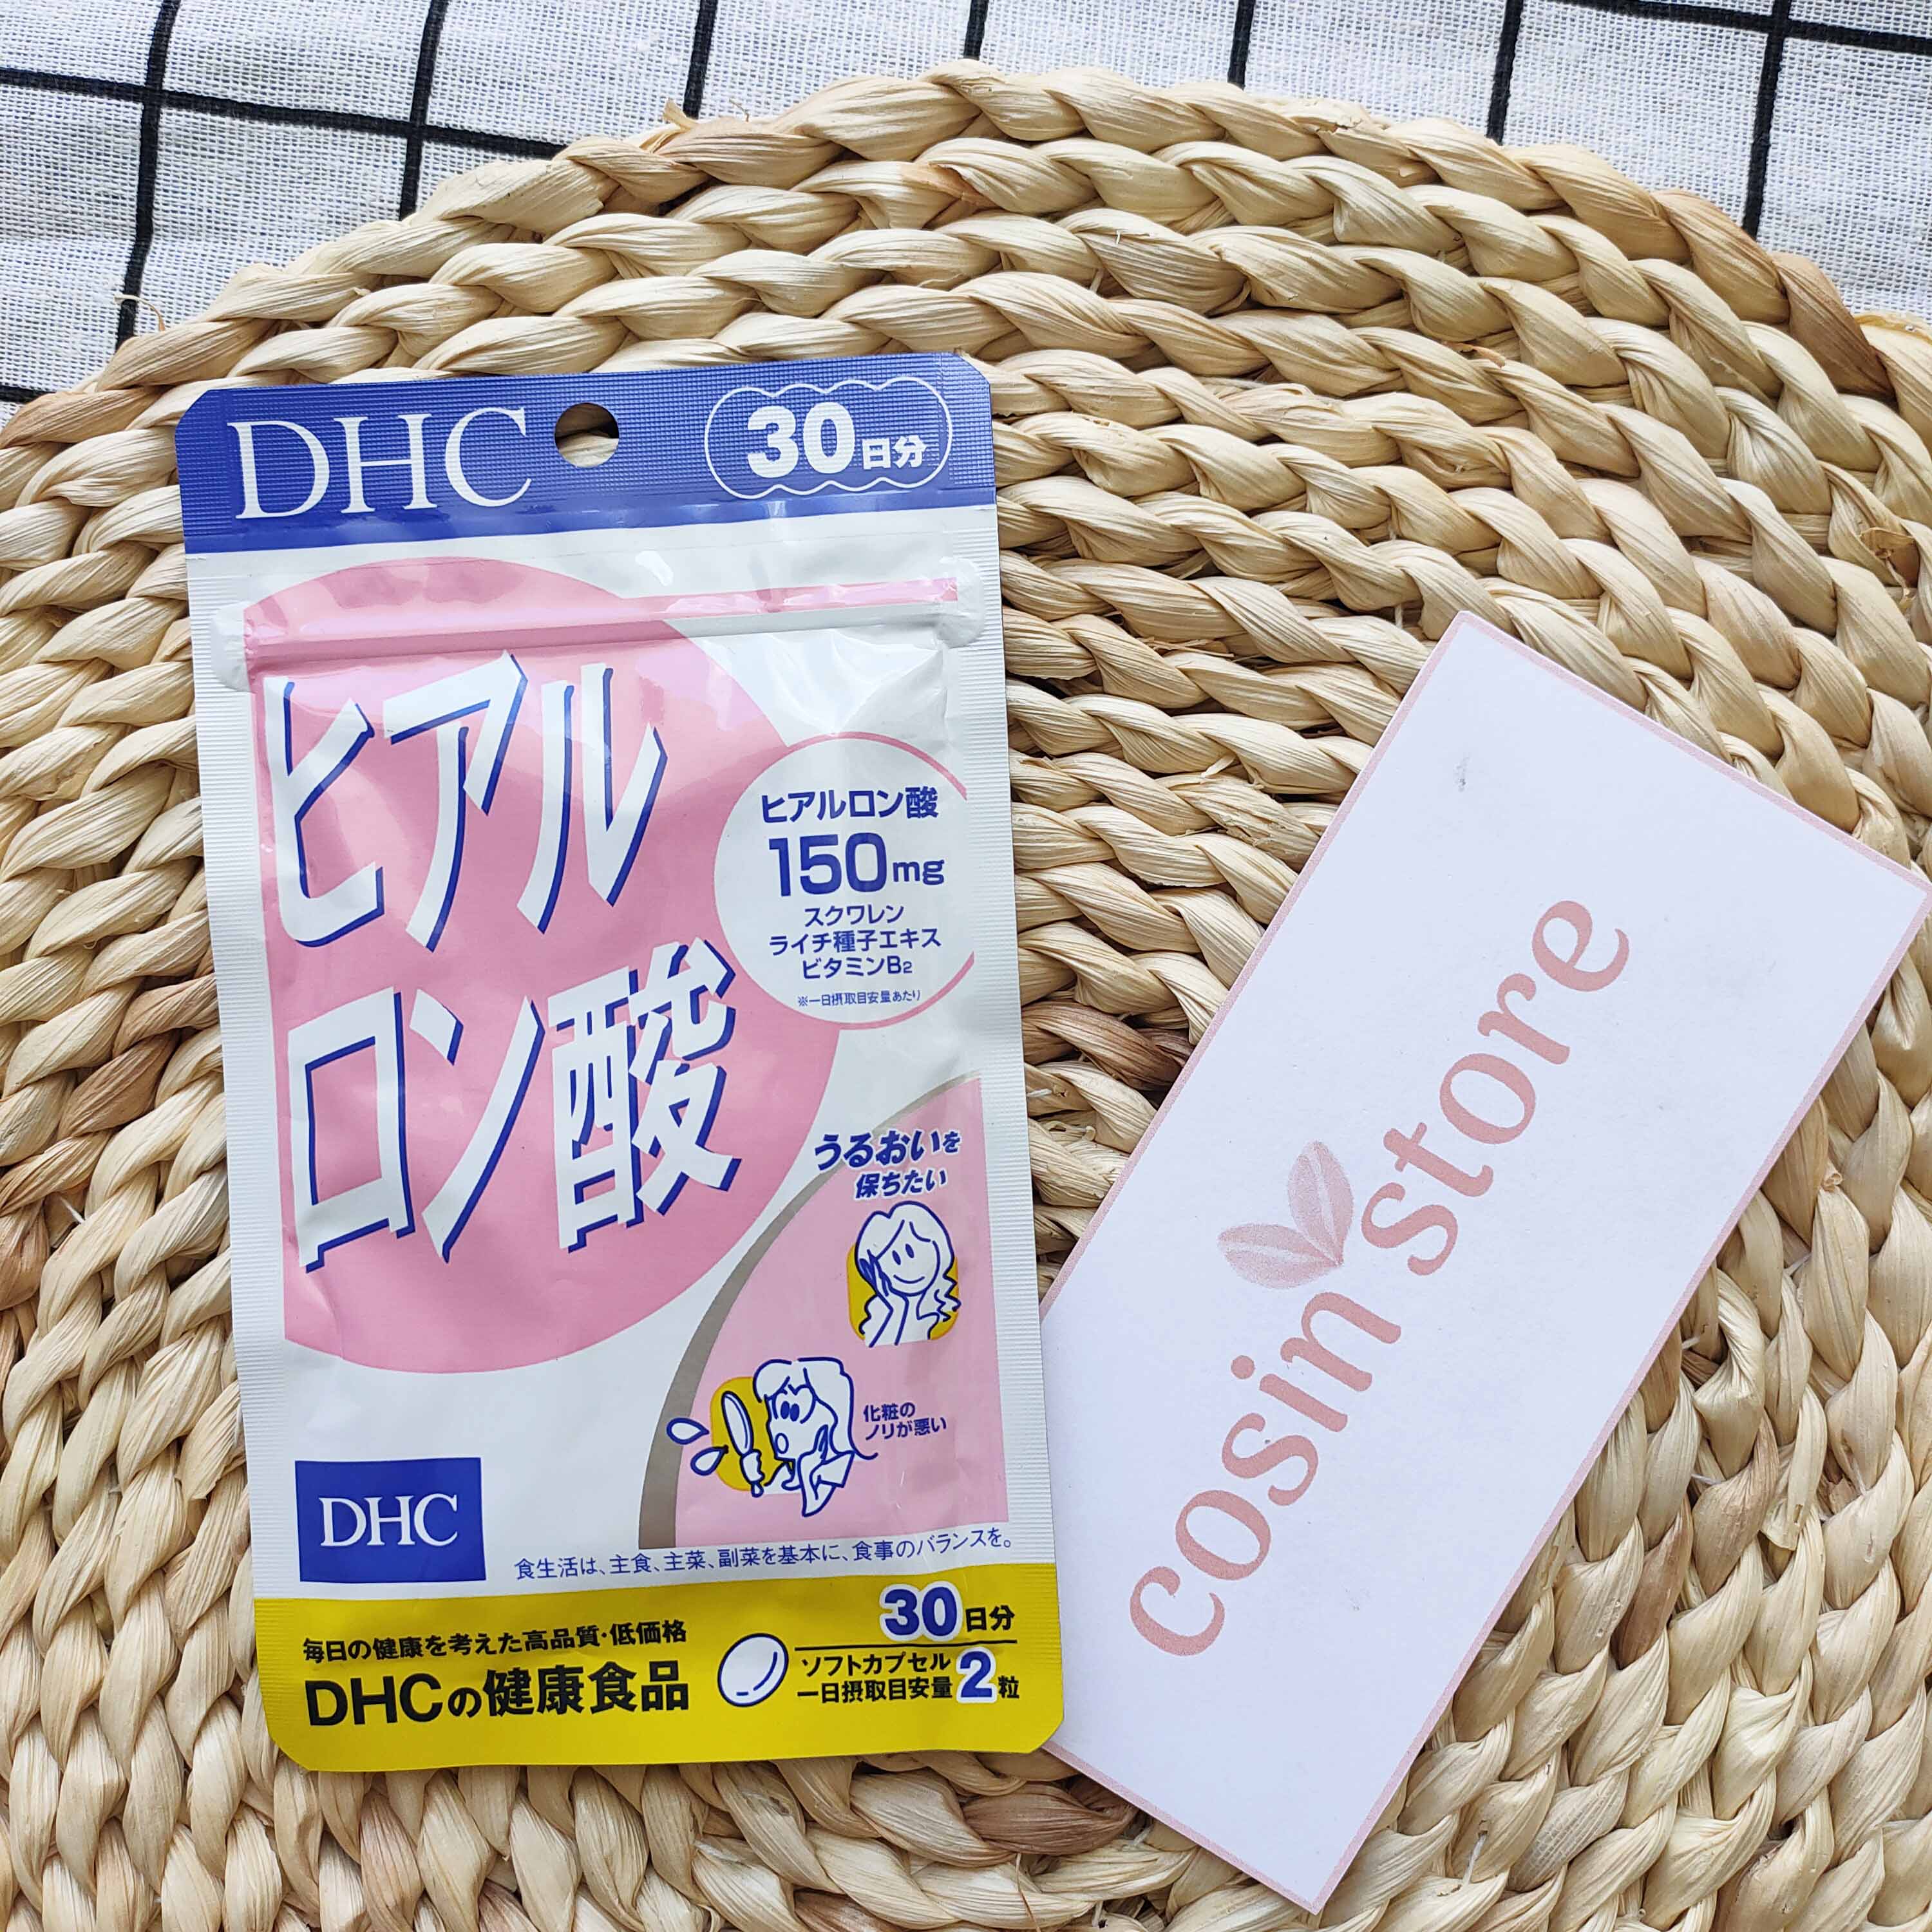 Viên uống Cấp Nước DHC Hyaluronic Acid 30 ngày dùng - 60 viên của Nhật Bản giúp giữ ẩm cho da - Cosin Store